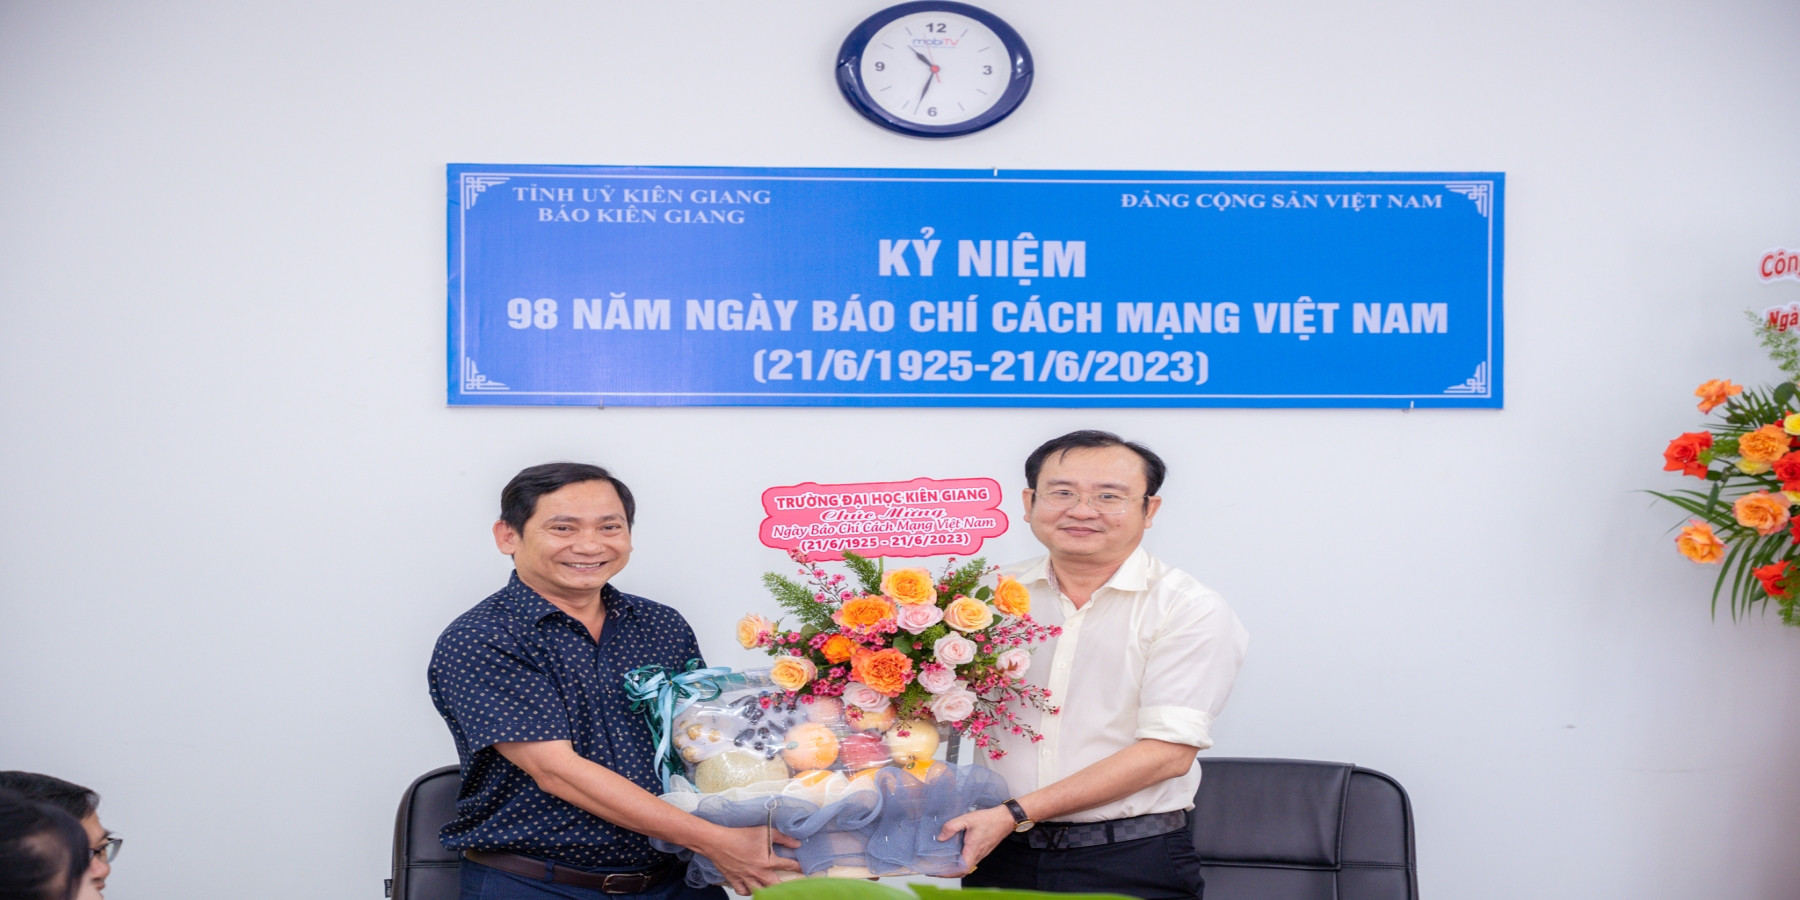 Trường Đại học Kiên Giang chúc mừng Ngày Báo chí Cách mạng Việt Nam